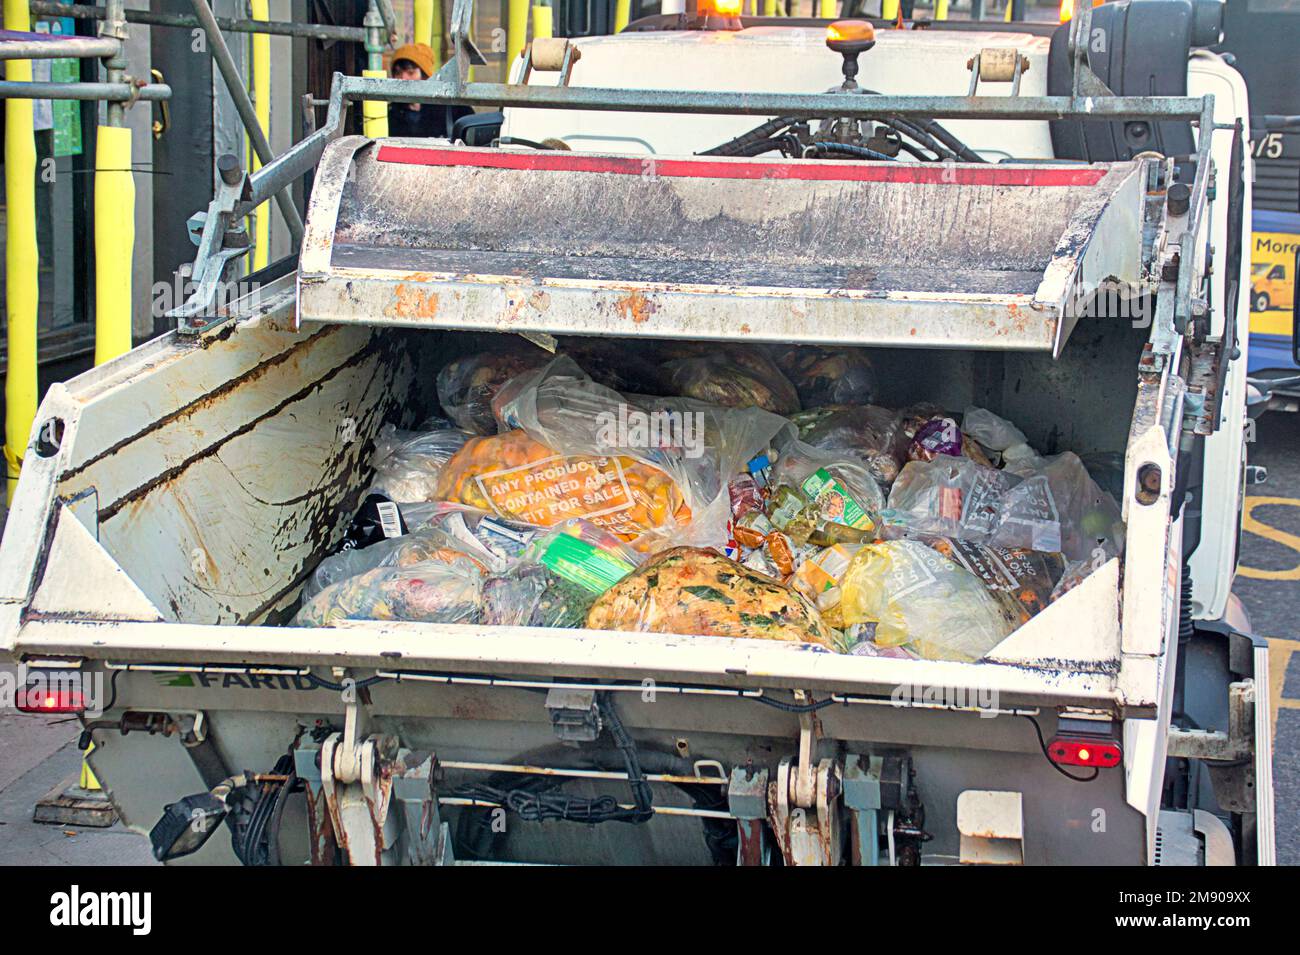 Gewerblicher Müllwagen mit Inhalt des Müllbehälters, der Lebensmittel aus der Mitnahme und Restaurants aus dem Recycling enthält Stockfoto